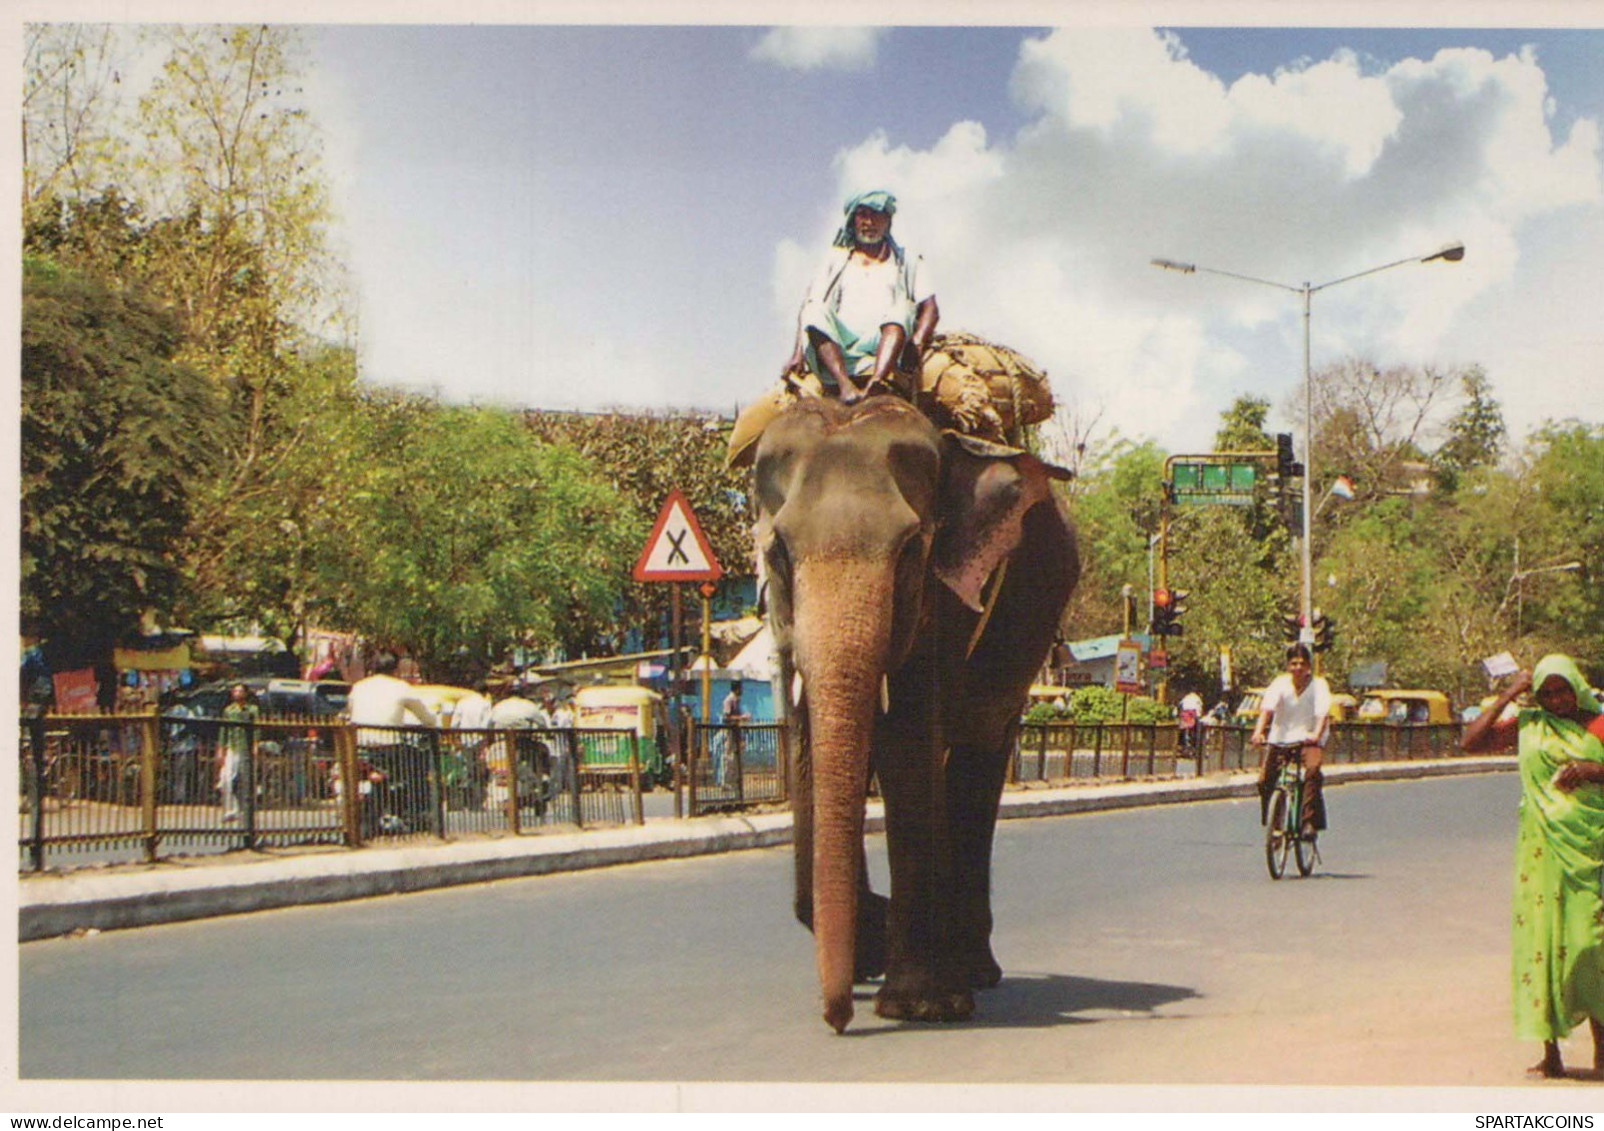 ELEFANT Tier Vintage Ansichtskarte Postkarte CPSM #PBS742.DE - Elefanten